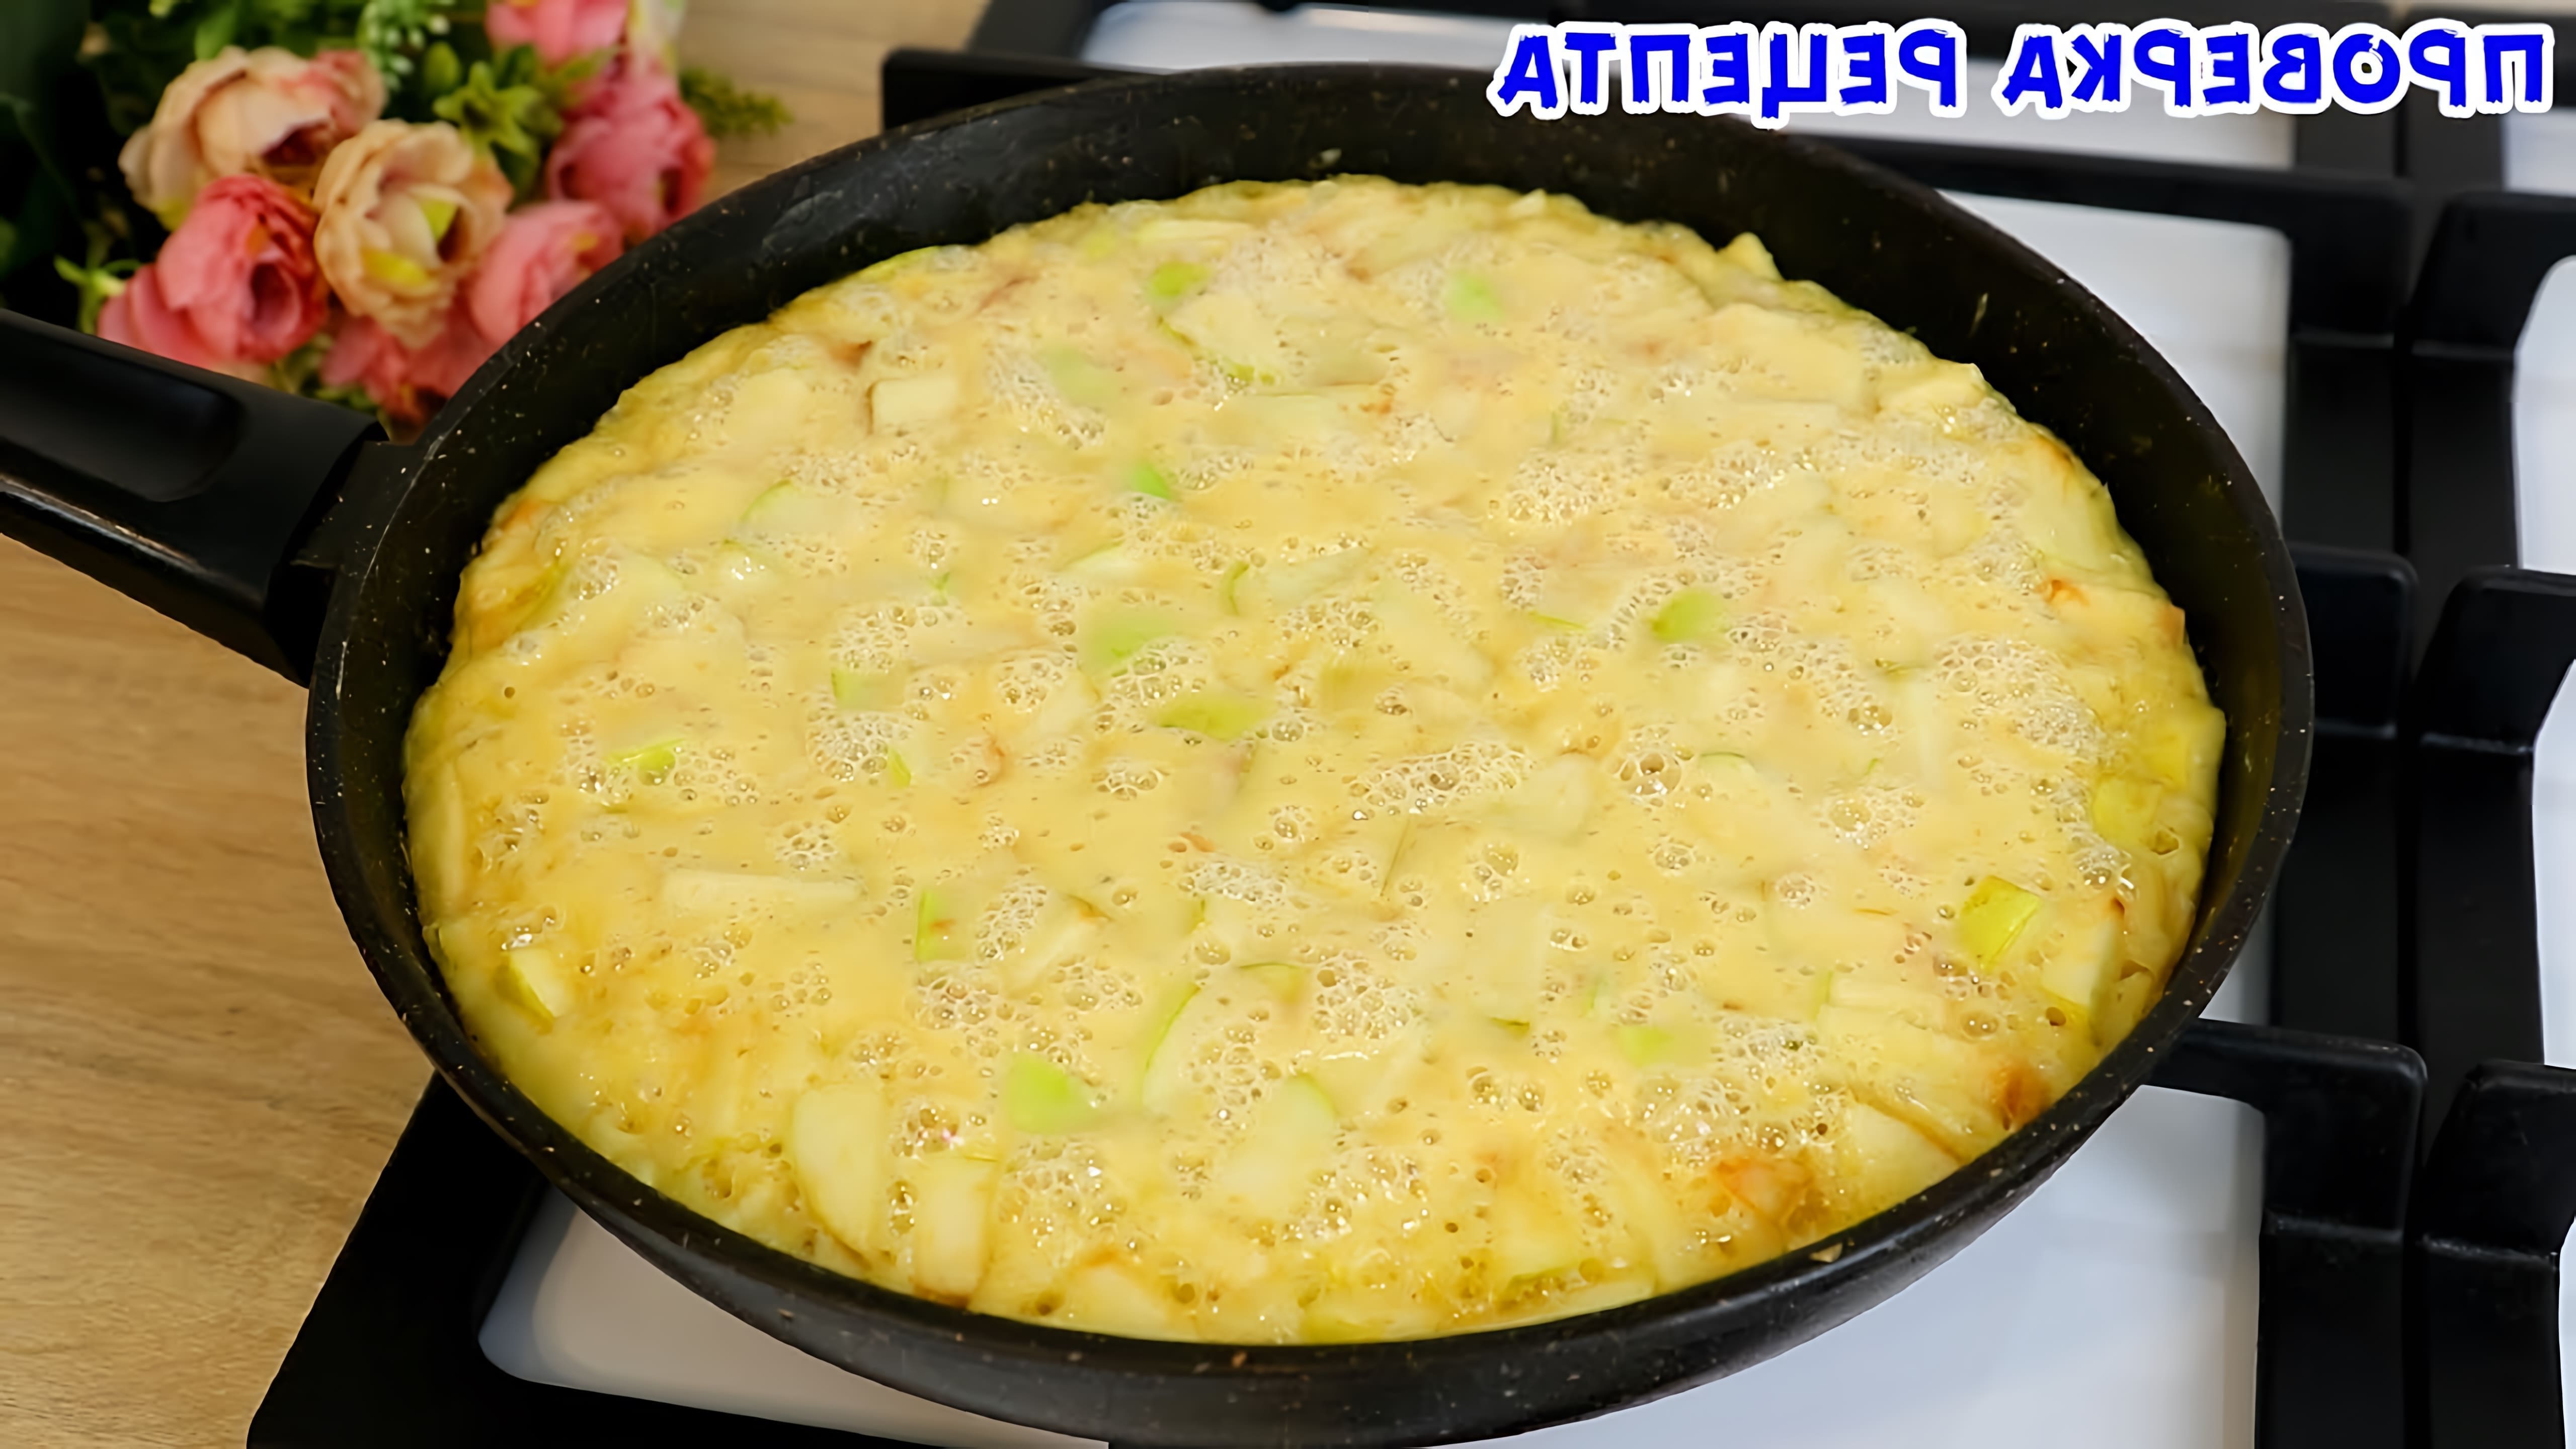 В этом видео демонстрируется рецепт яблочного пирога на сковороде, который готовится всего за 5 минут